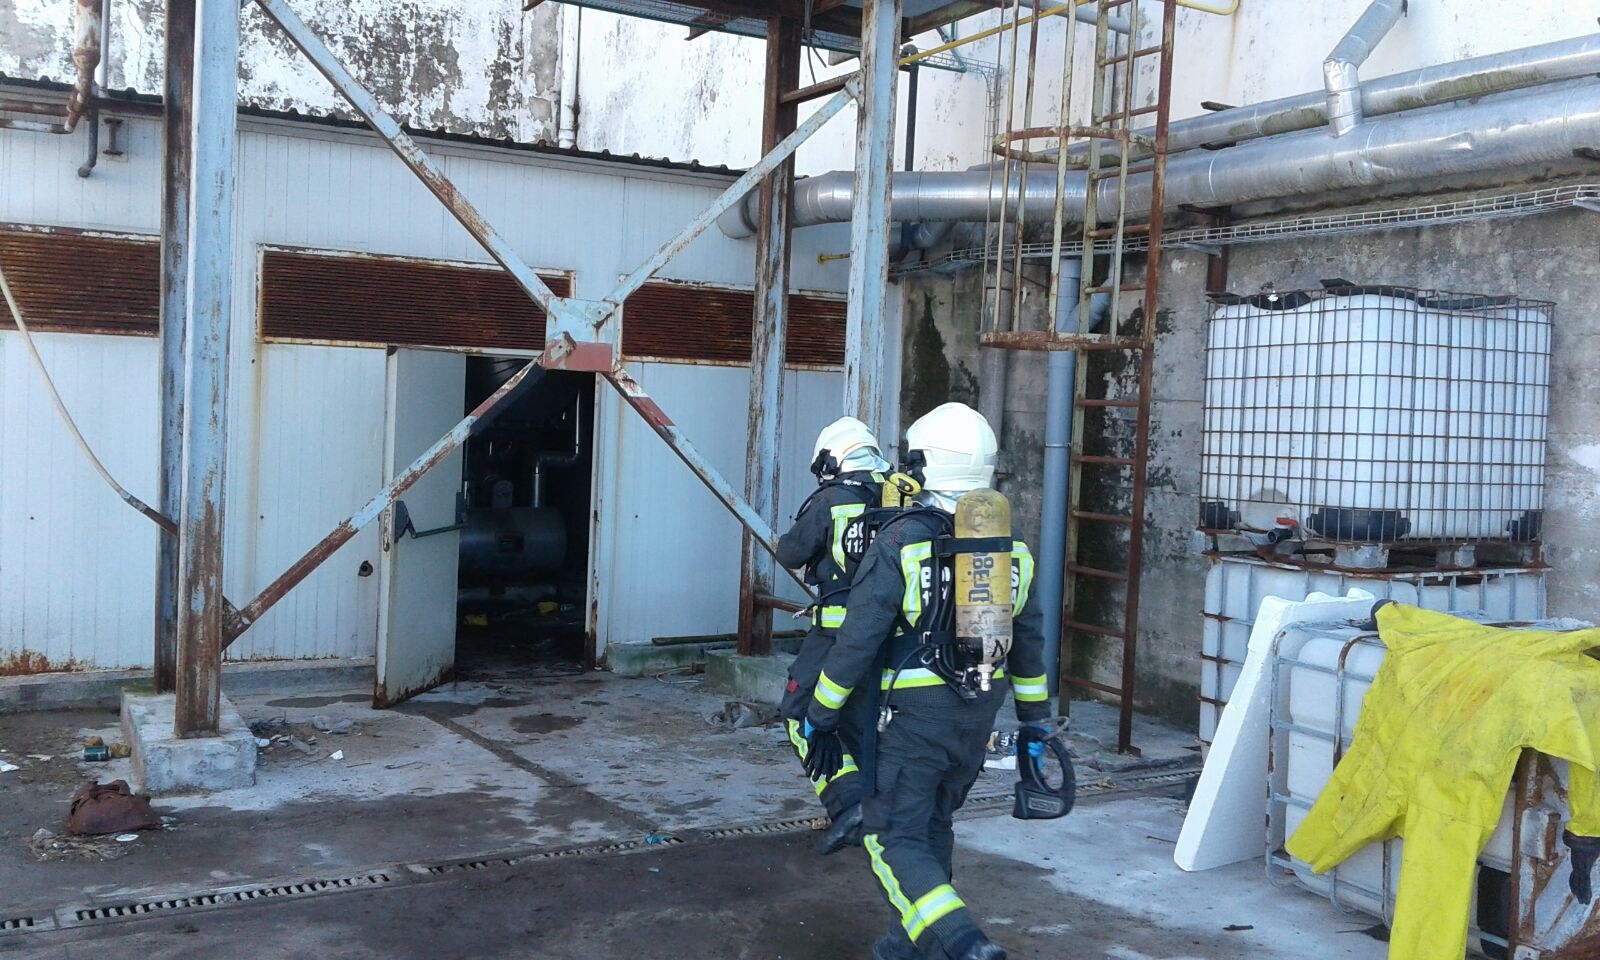  El robo de tuberías causa dos escapes de amoniaco en una fábrica abandonada de Santoña